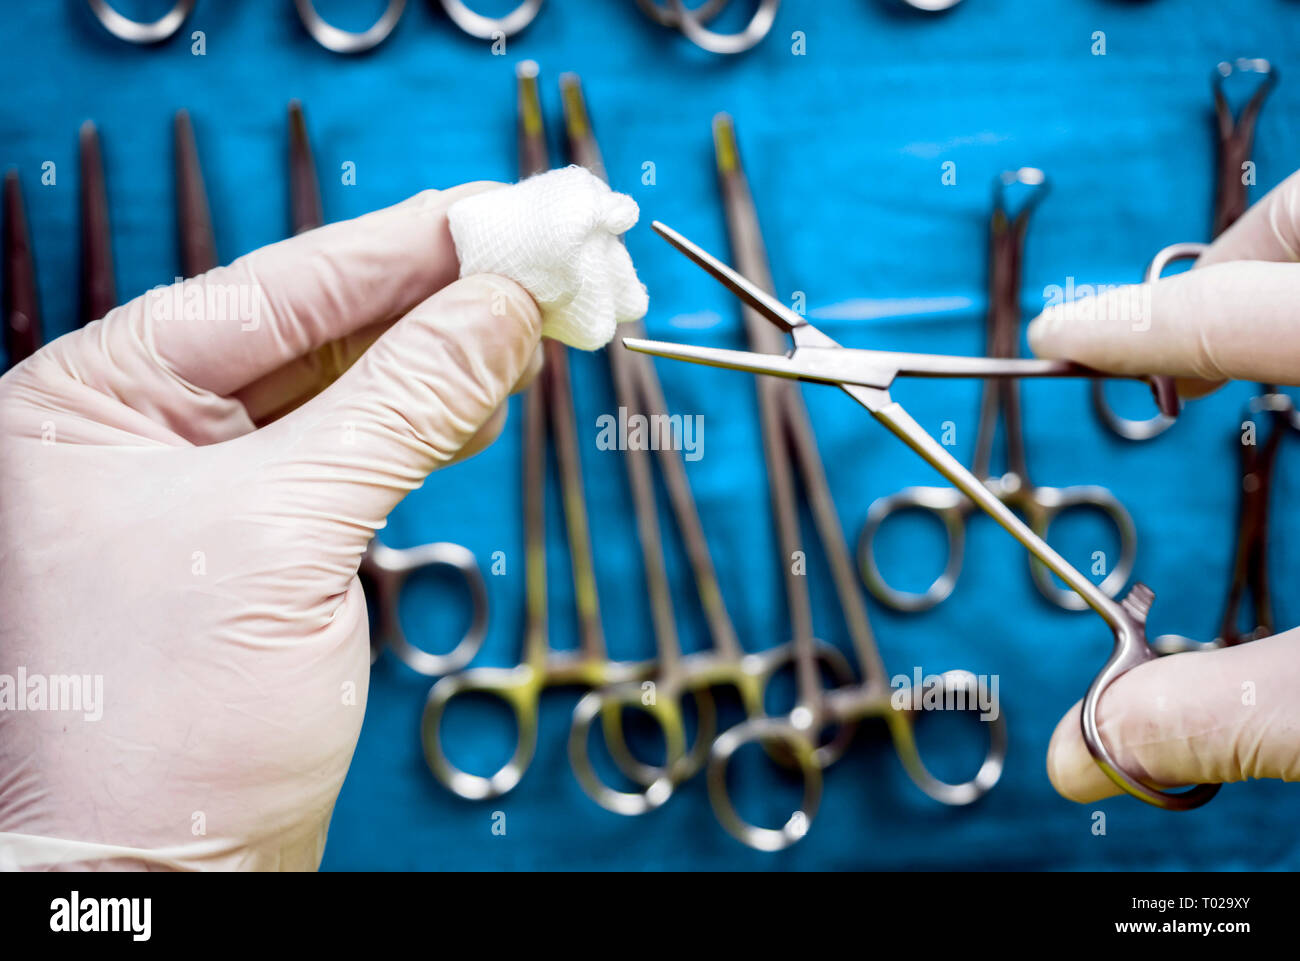 Chirurg im Operationssaal arbeiten, die Hände mit Handschuhen holding Schere mit torunda, konzeptionelle Bild, horizontale Zusammensetzung Stockfoto